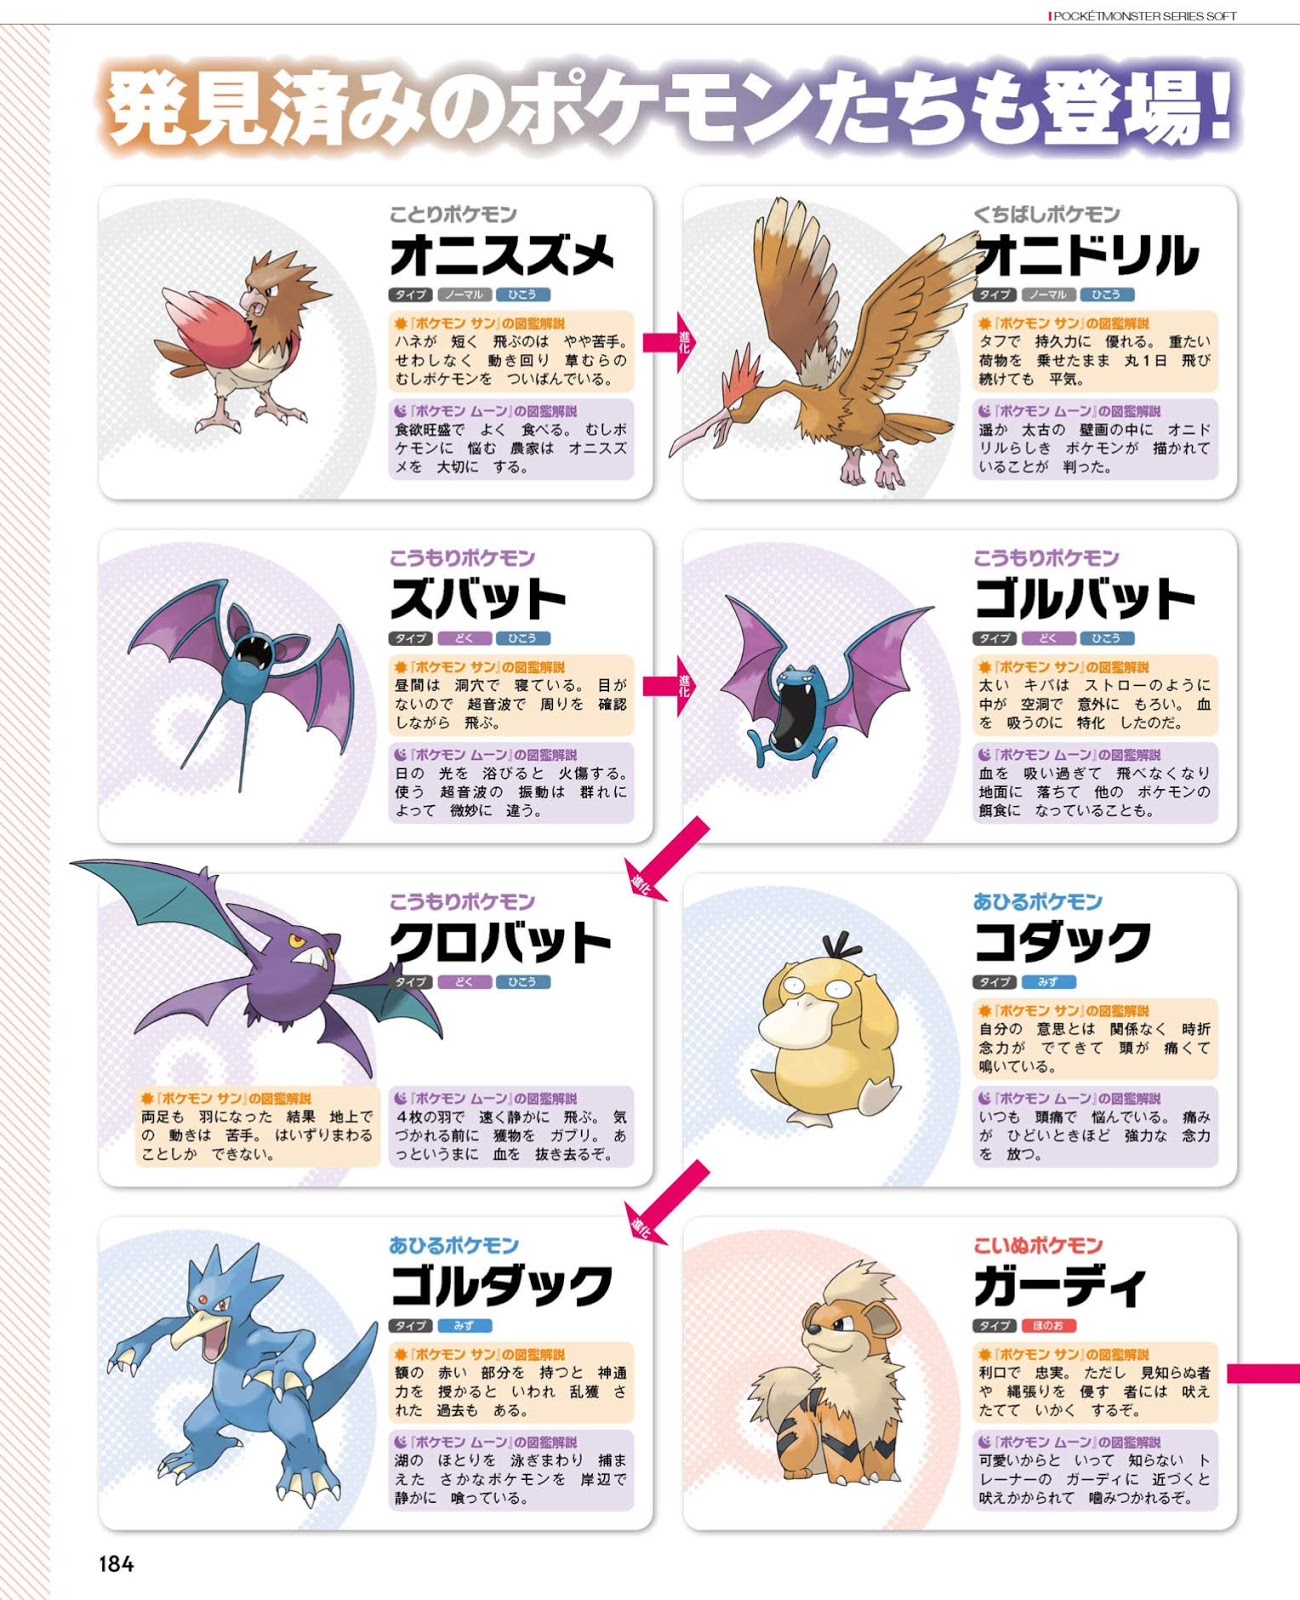 Pokemon Sun And Moon Alola Forms - Pokémon Sun & Moon Alola Form Pokémon Serebii